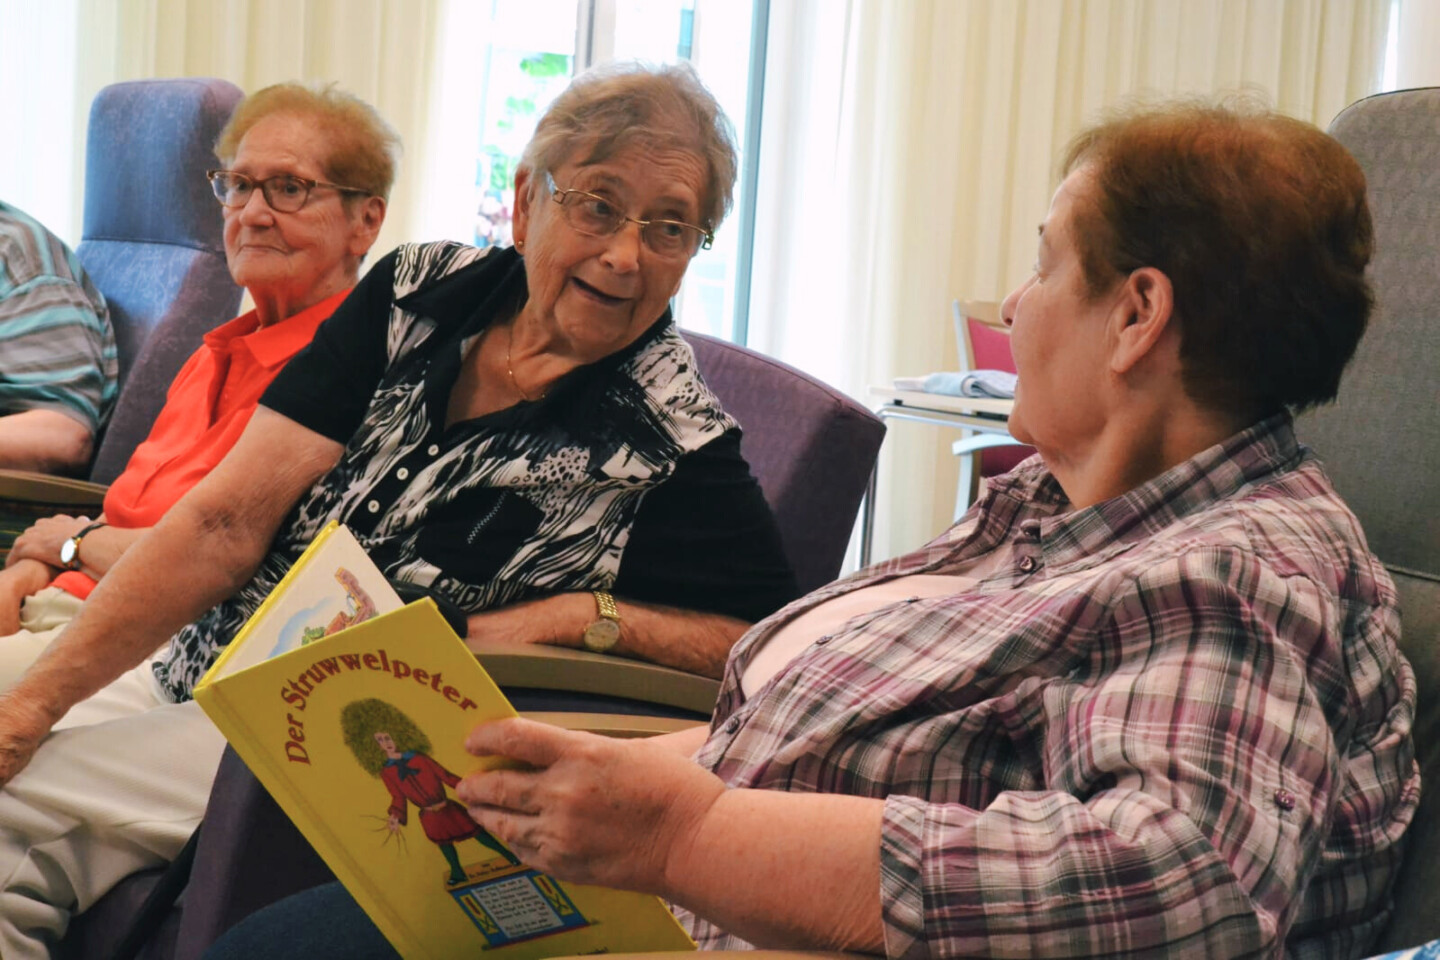 Drei ältere Frauen sitzen nebeneinander. Die Frau im Vordergrund hält ein aufgeschlagenes Struwwelpeter-Buch in den Händen.